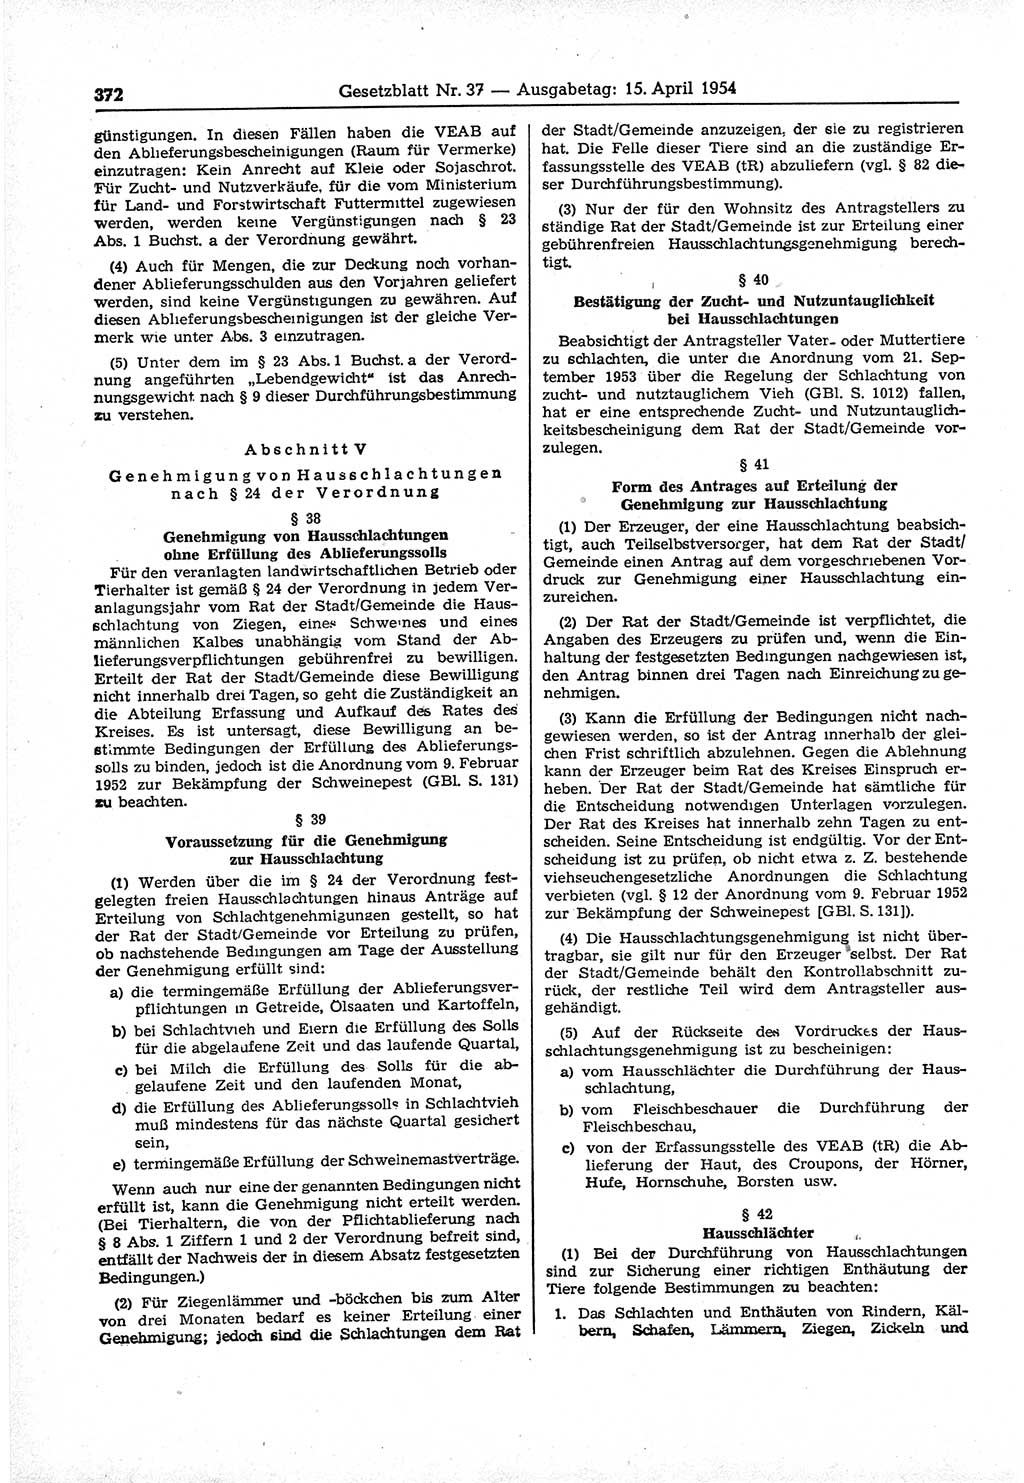 Gesetzblatt (GBl.) der Deutschen Demokratischen Republik (DDR) 1954, Seite 372 (GBl. DDR 1954, S. 372)